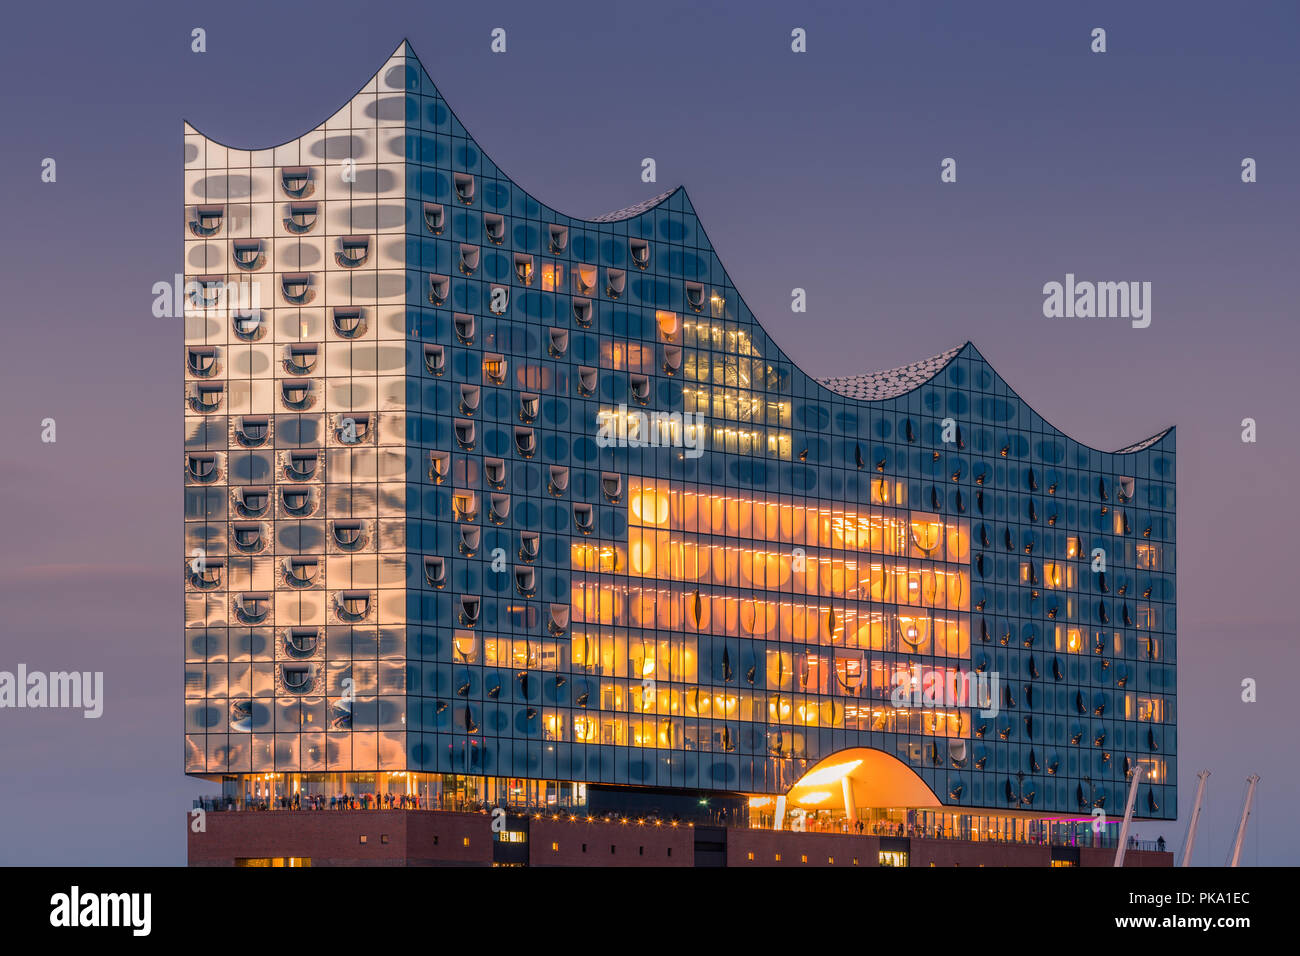 La Elbphilharmonie (Elbe Philharmonic Hall) è una sala da concerto nel quartiere HafenCity di Amburgo, Germania, sulla penisola del fiume Elba. È Foto Stock